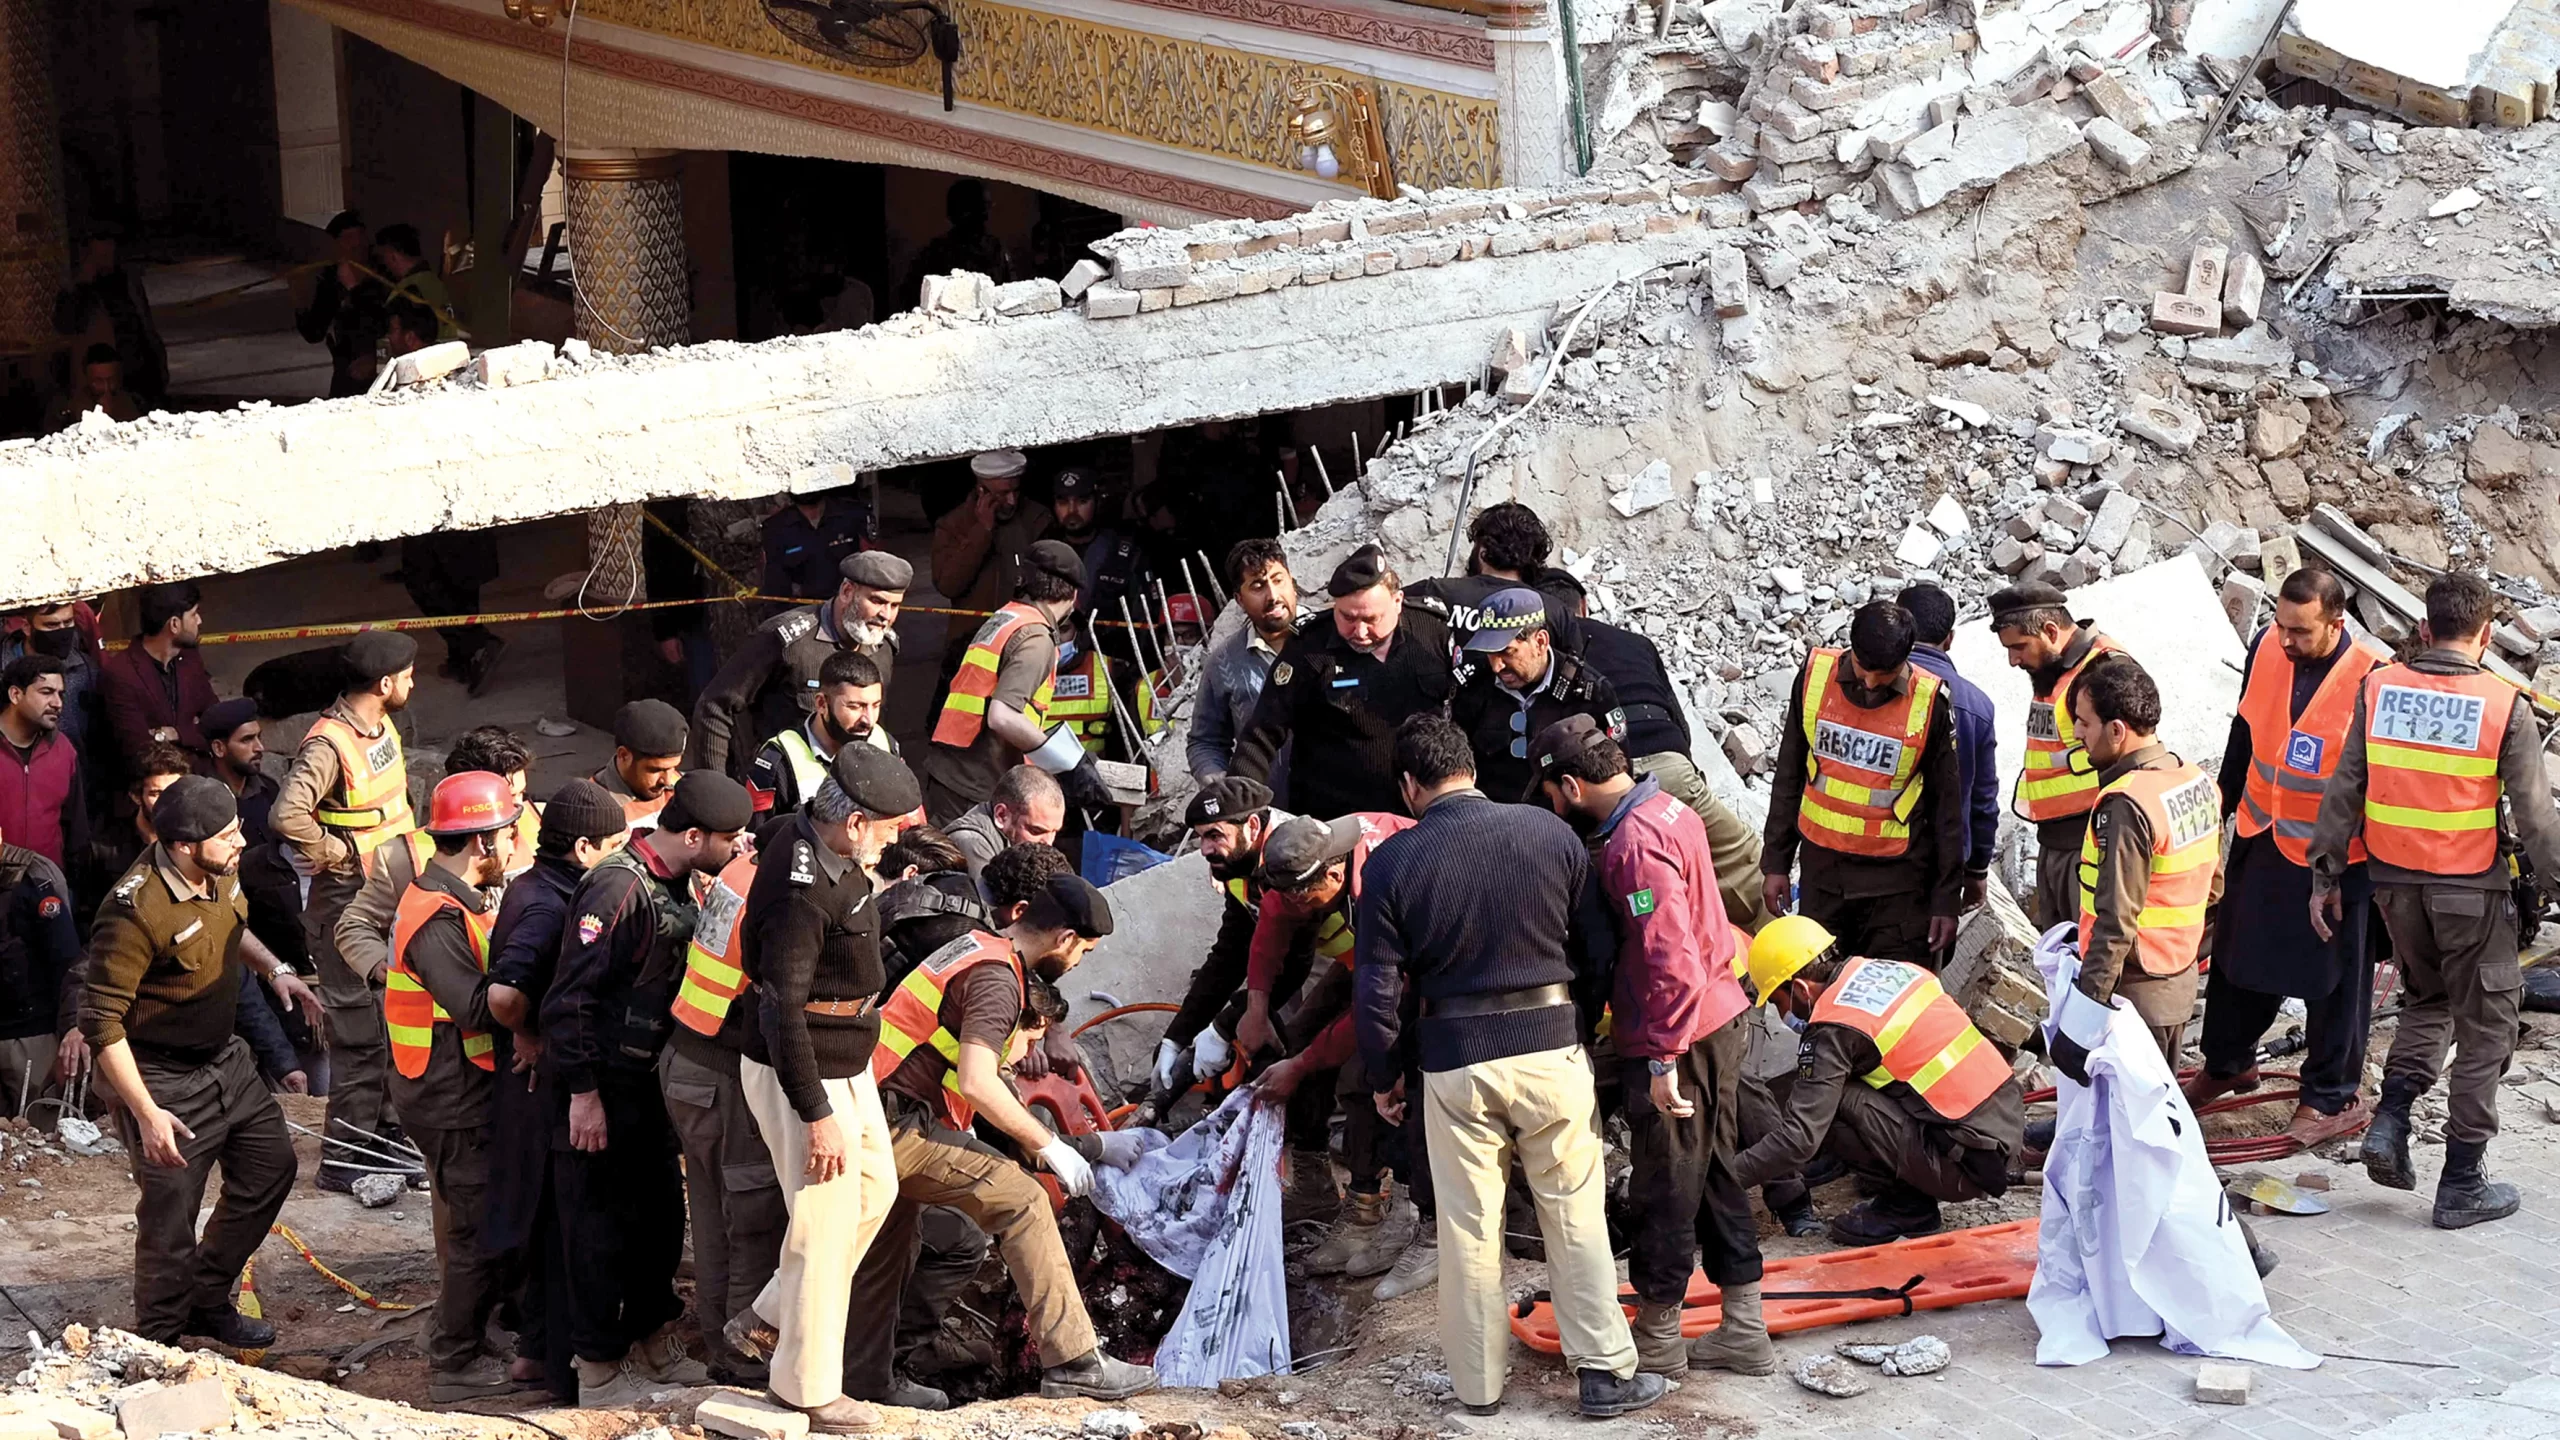 مقتل 32 بانفجار داخل مسجد في بيشاور وطالبان باكستان تعلن مسؤوليتها